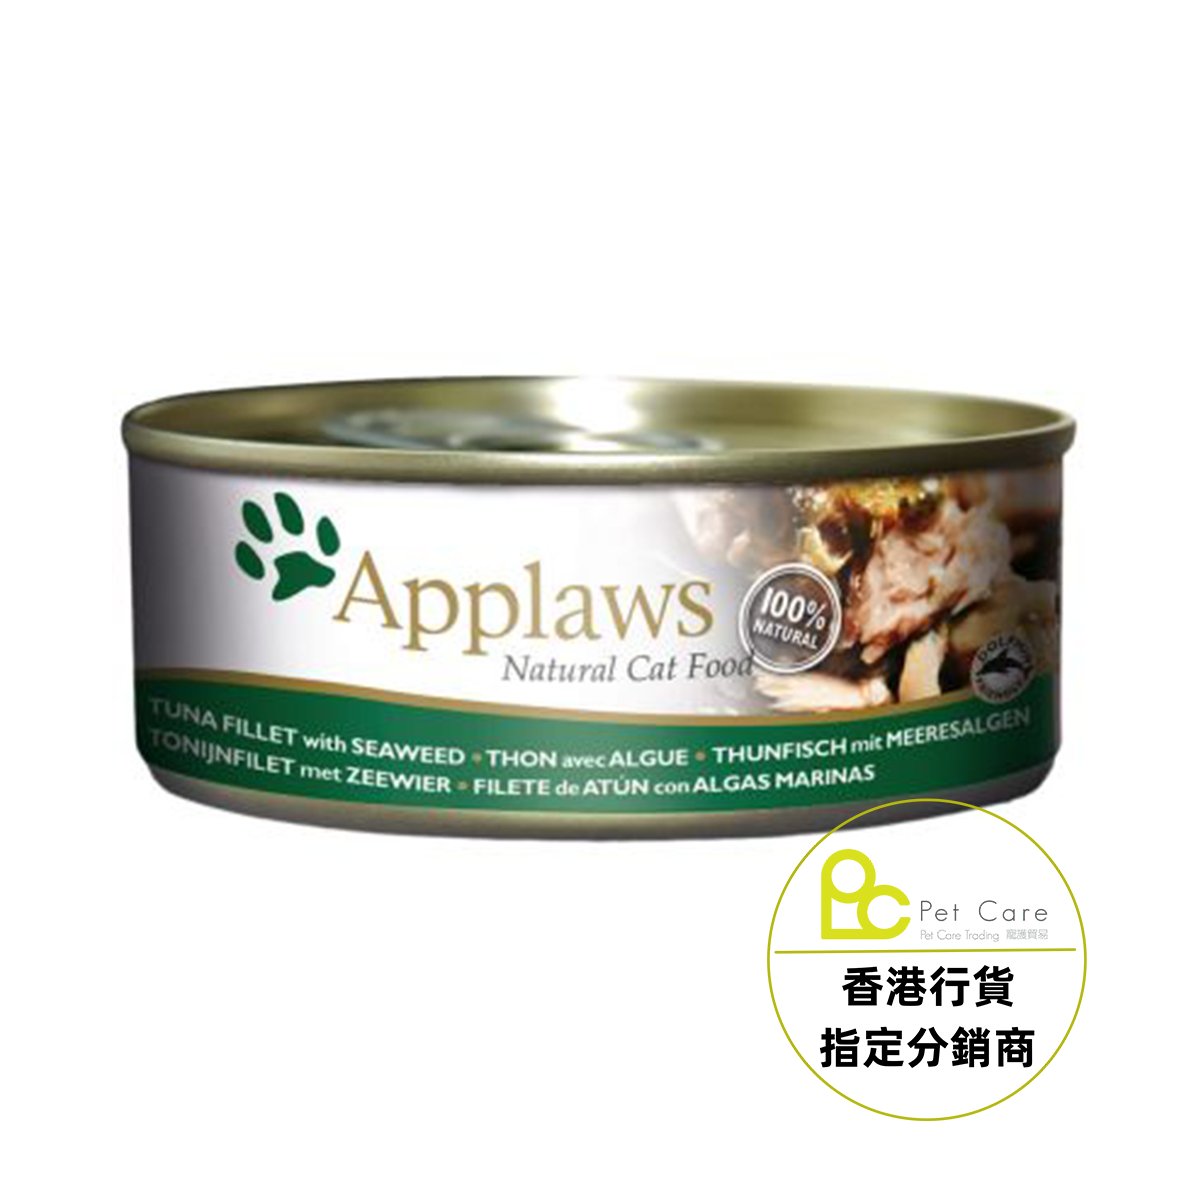 Applaws 全天然 156g 貓罐頭 - 吞拿魚紫菜  (大)